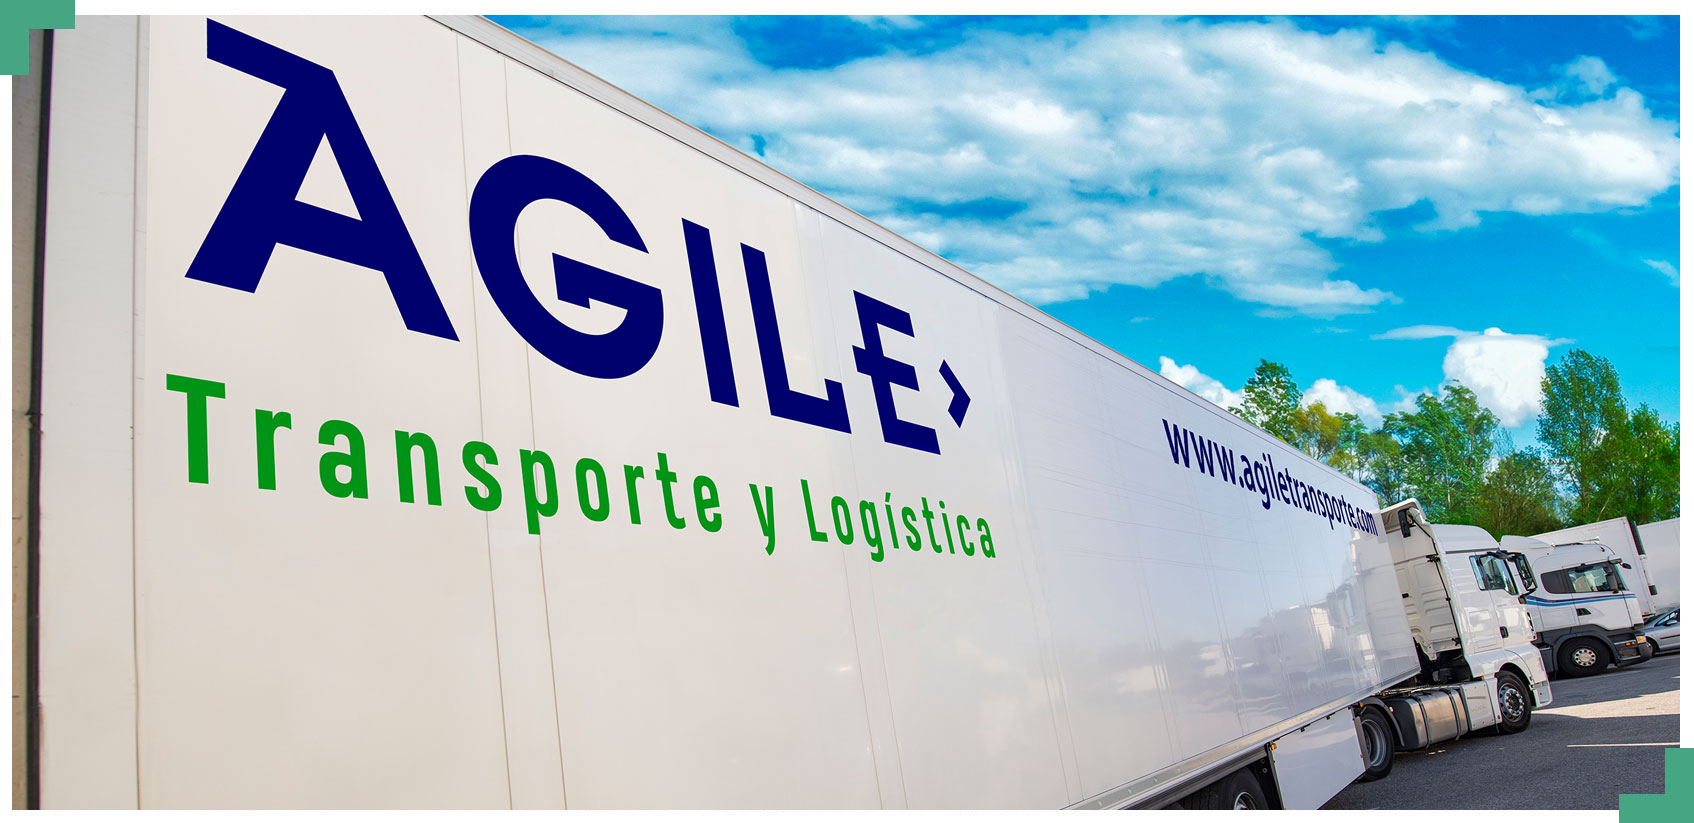 AGILE Transporte y Logística - camión